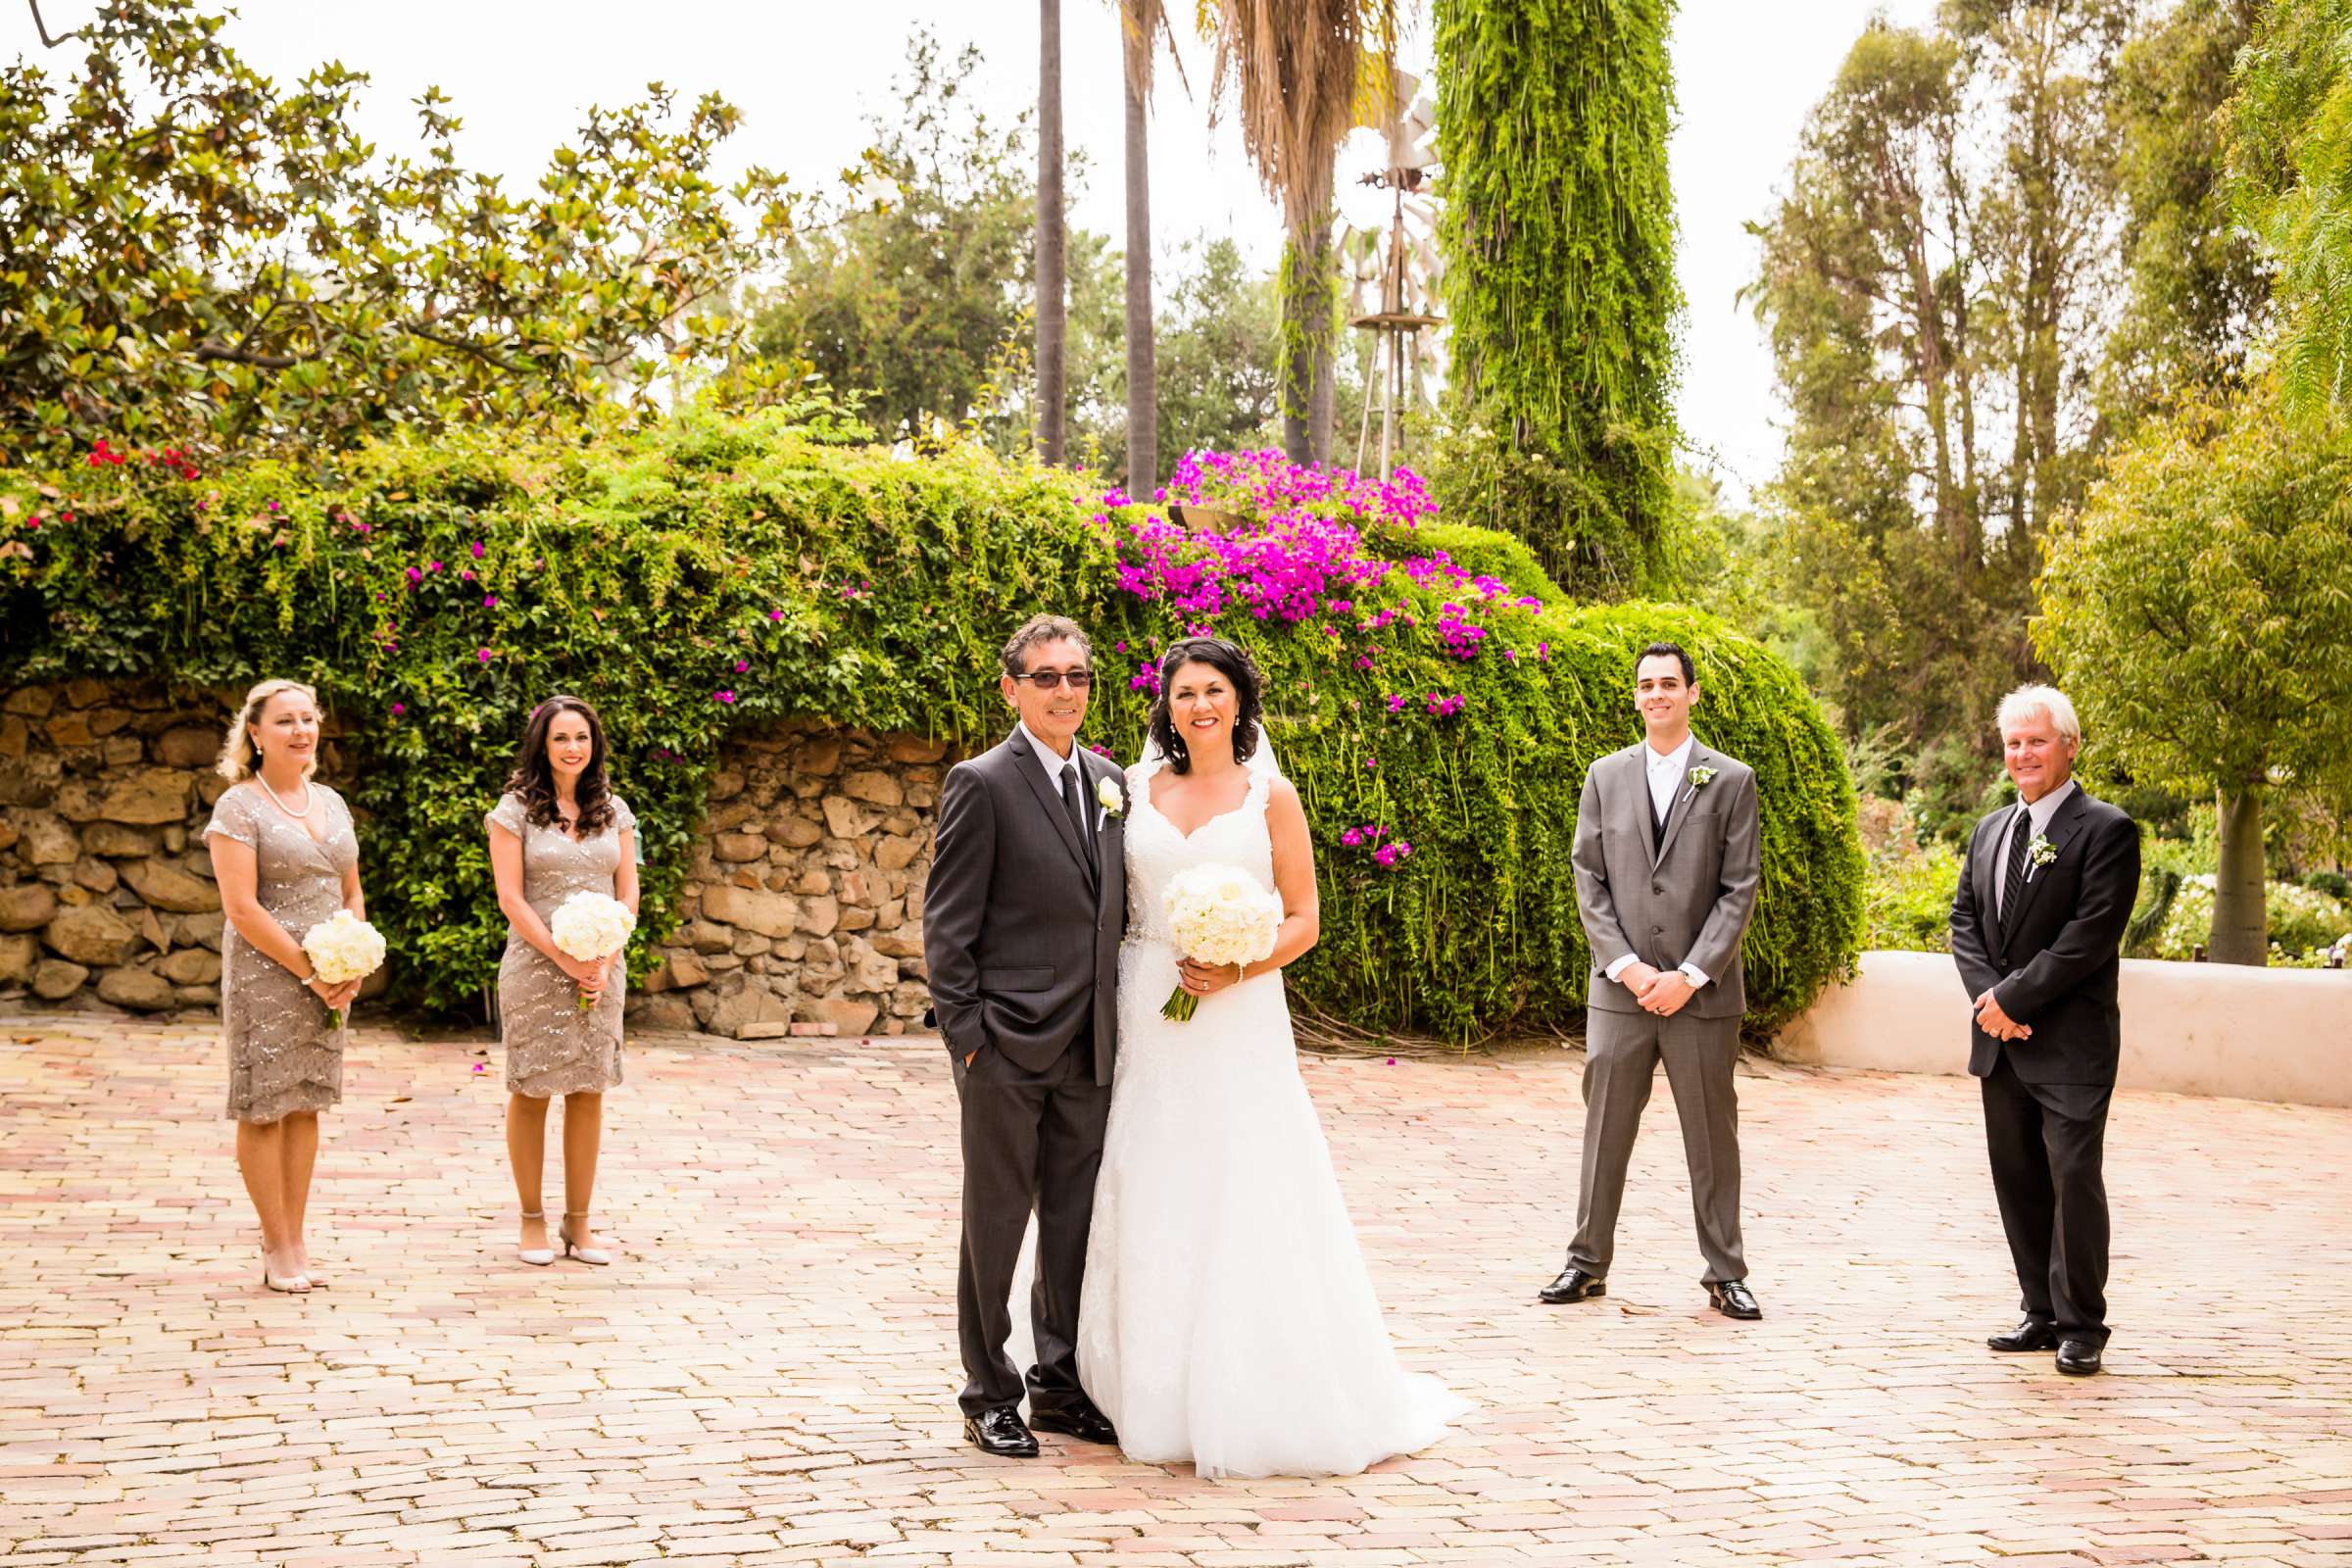 Rancho Buena Vista Adobe Wedding, Ellinor and Frank Wedding Photo #35 by True Photography